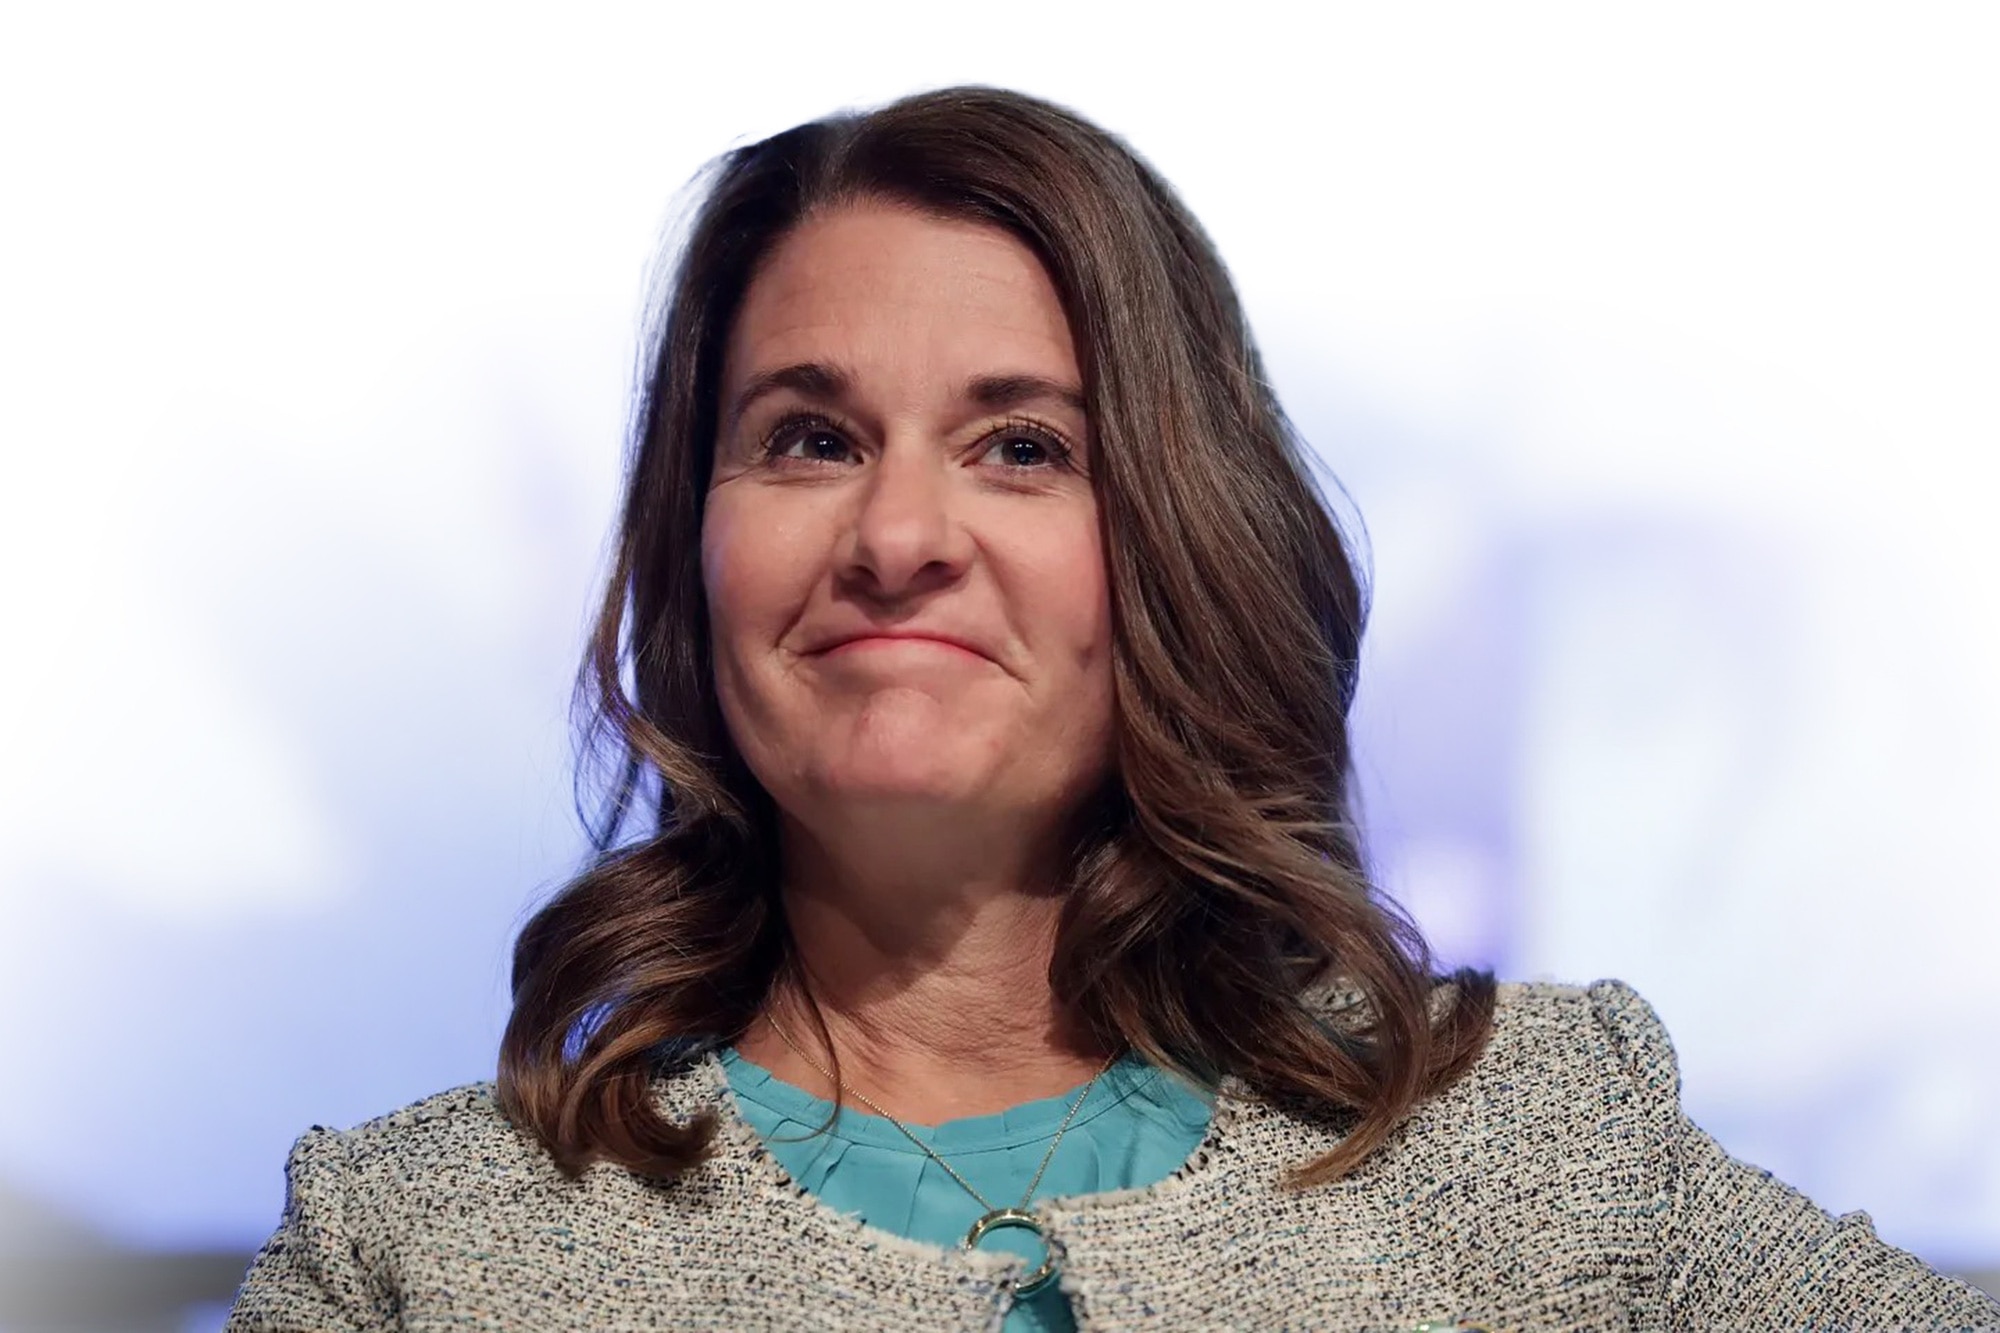 Tỉ phú Melinda French Gates công bố tài trợ 1 tỉ USD cho các tổ chức phi lợi nhuận tập trung cho các vấn đề của phụ nữ, gia đình và quyền sinh sản - Ảnh: Getty Images